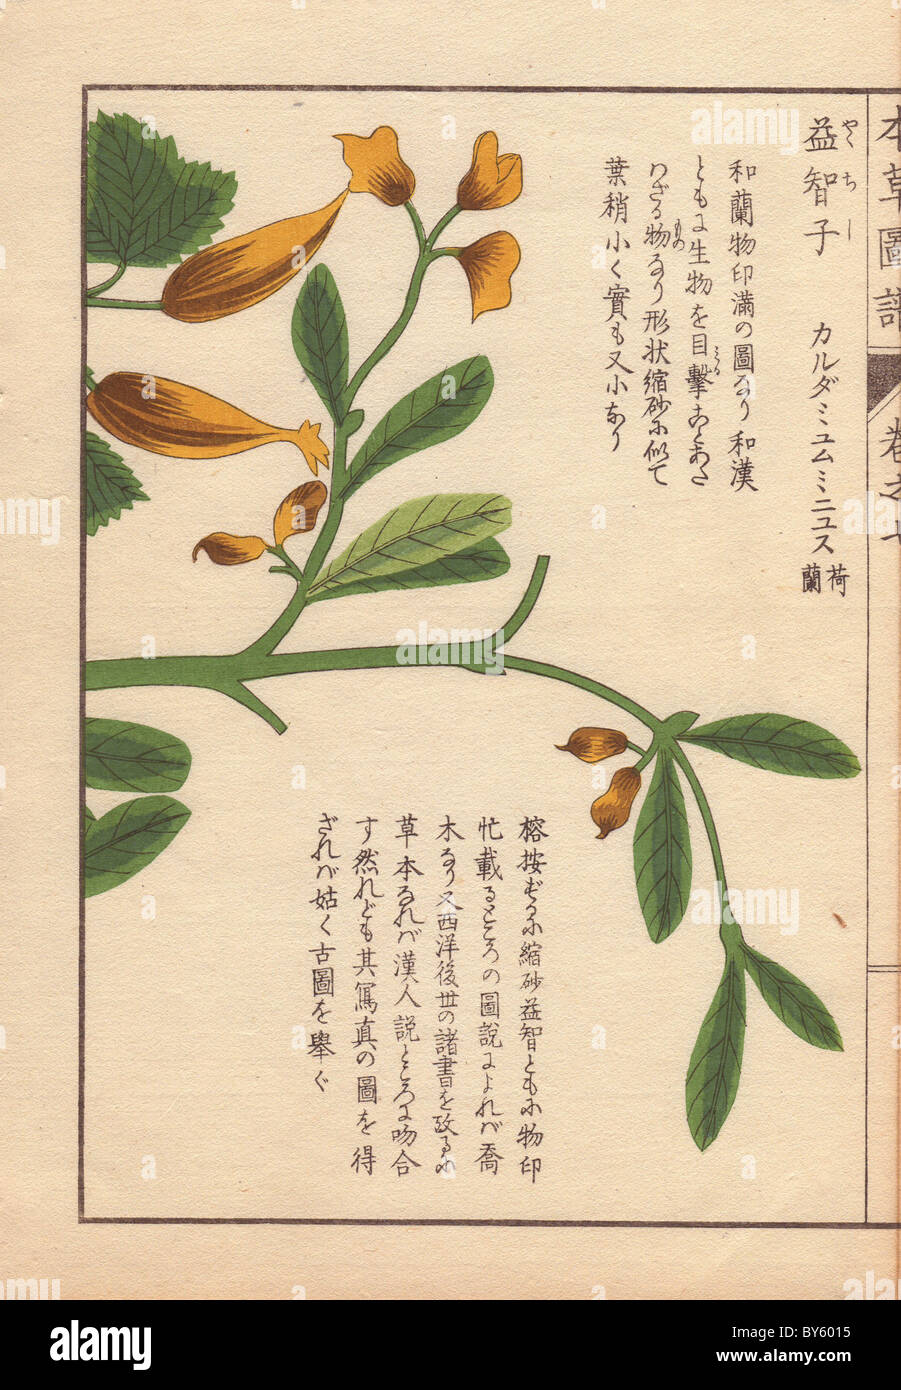 Yellow flowers and leaves of Cheilocostus speciosus, Amomum arboreum Lour. (Yakuchishi) Stock Photo